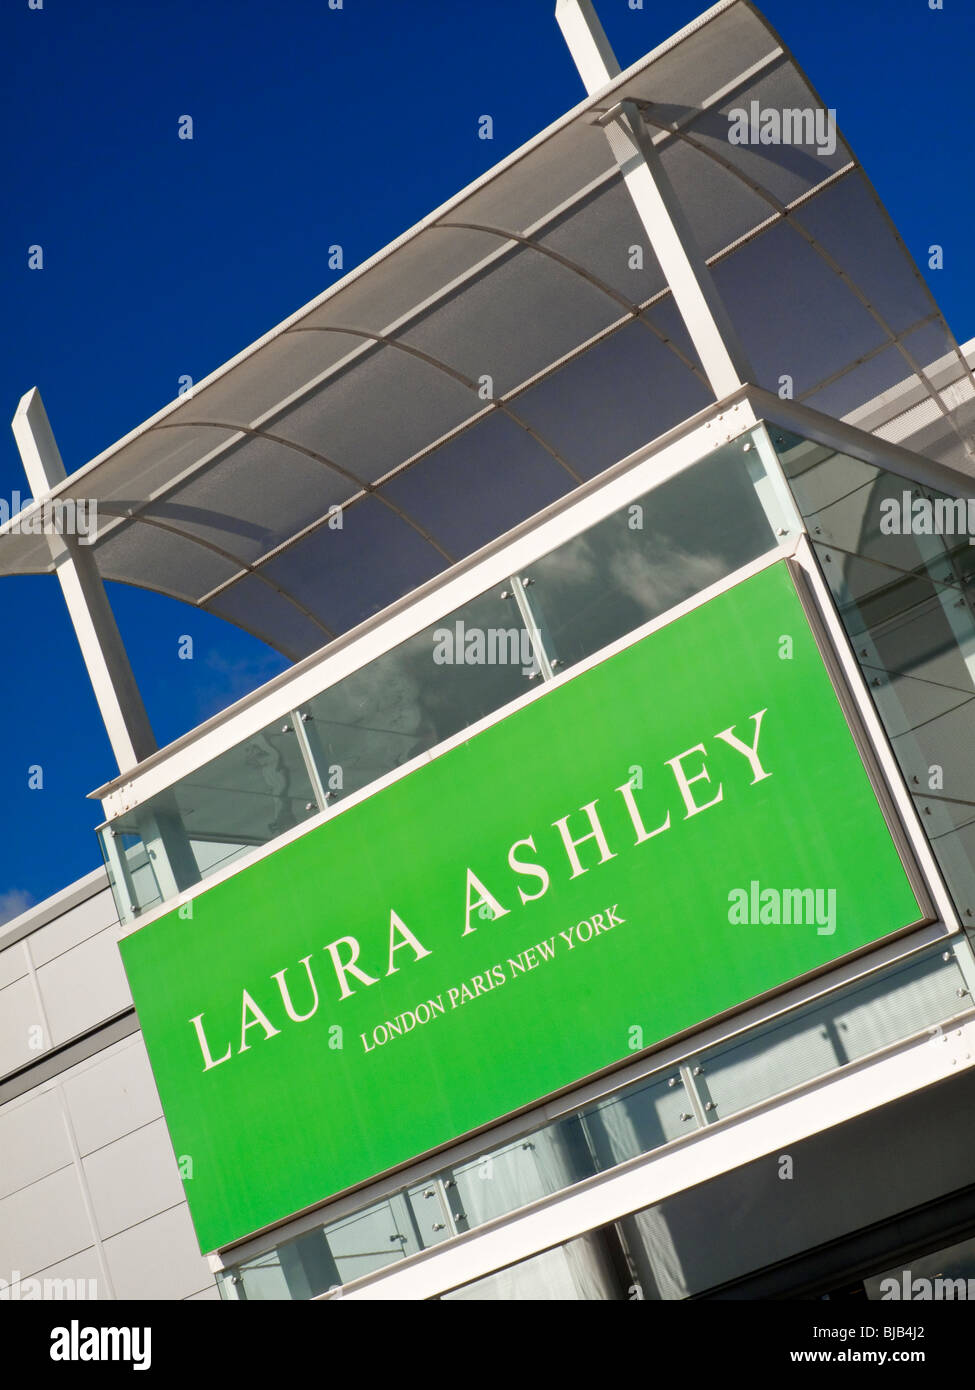 Laura Ashley-Shop unter Giltbrook Retail Park in der Nähe von Nottingham England UK Stockfoto